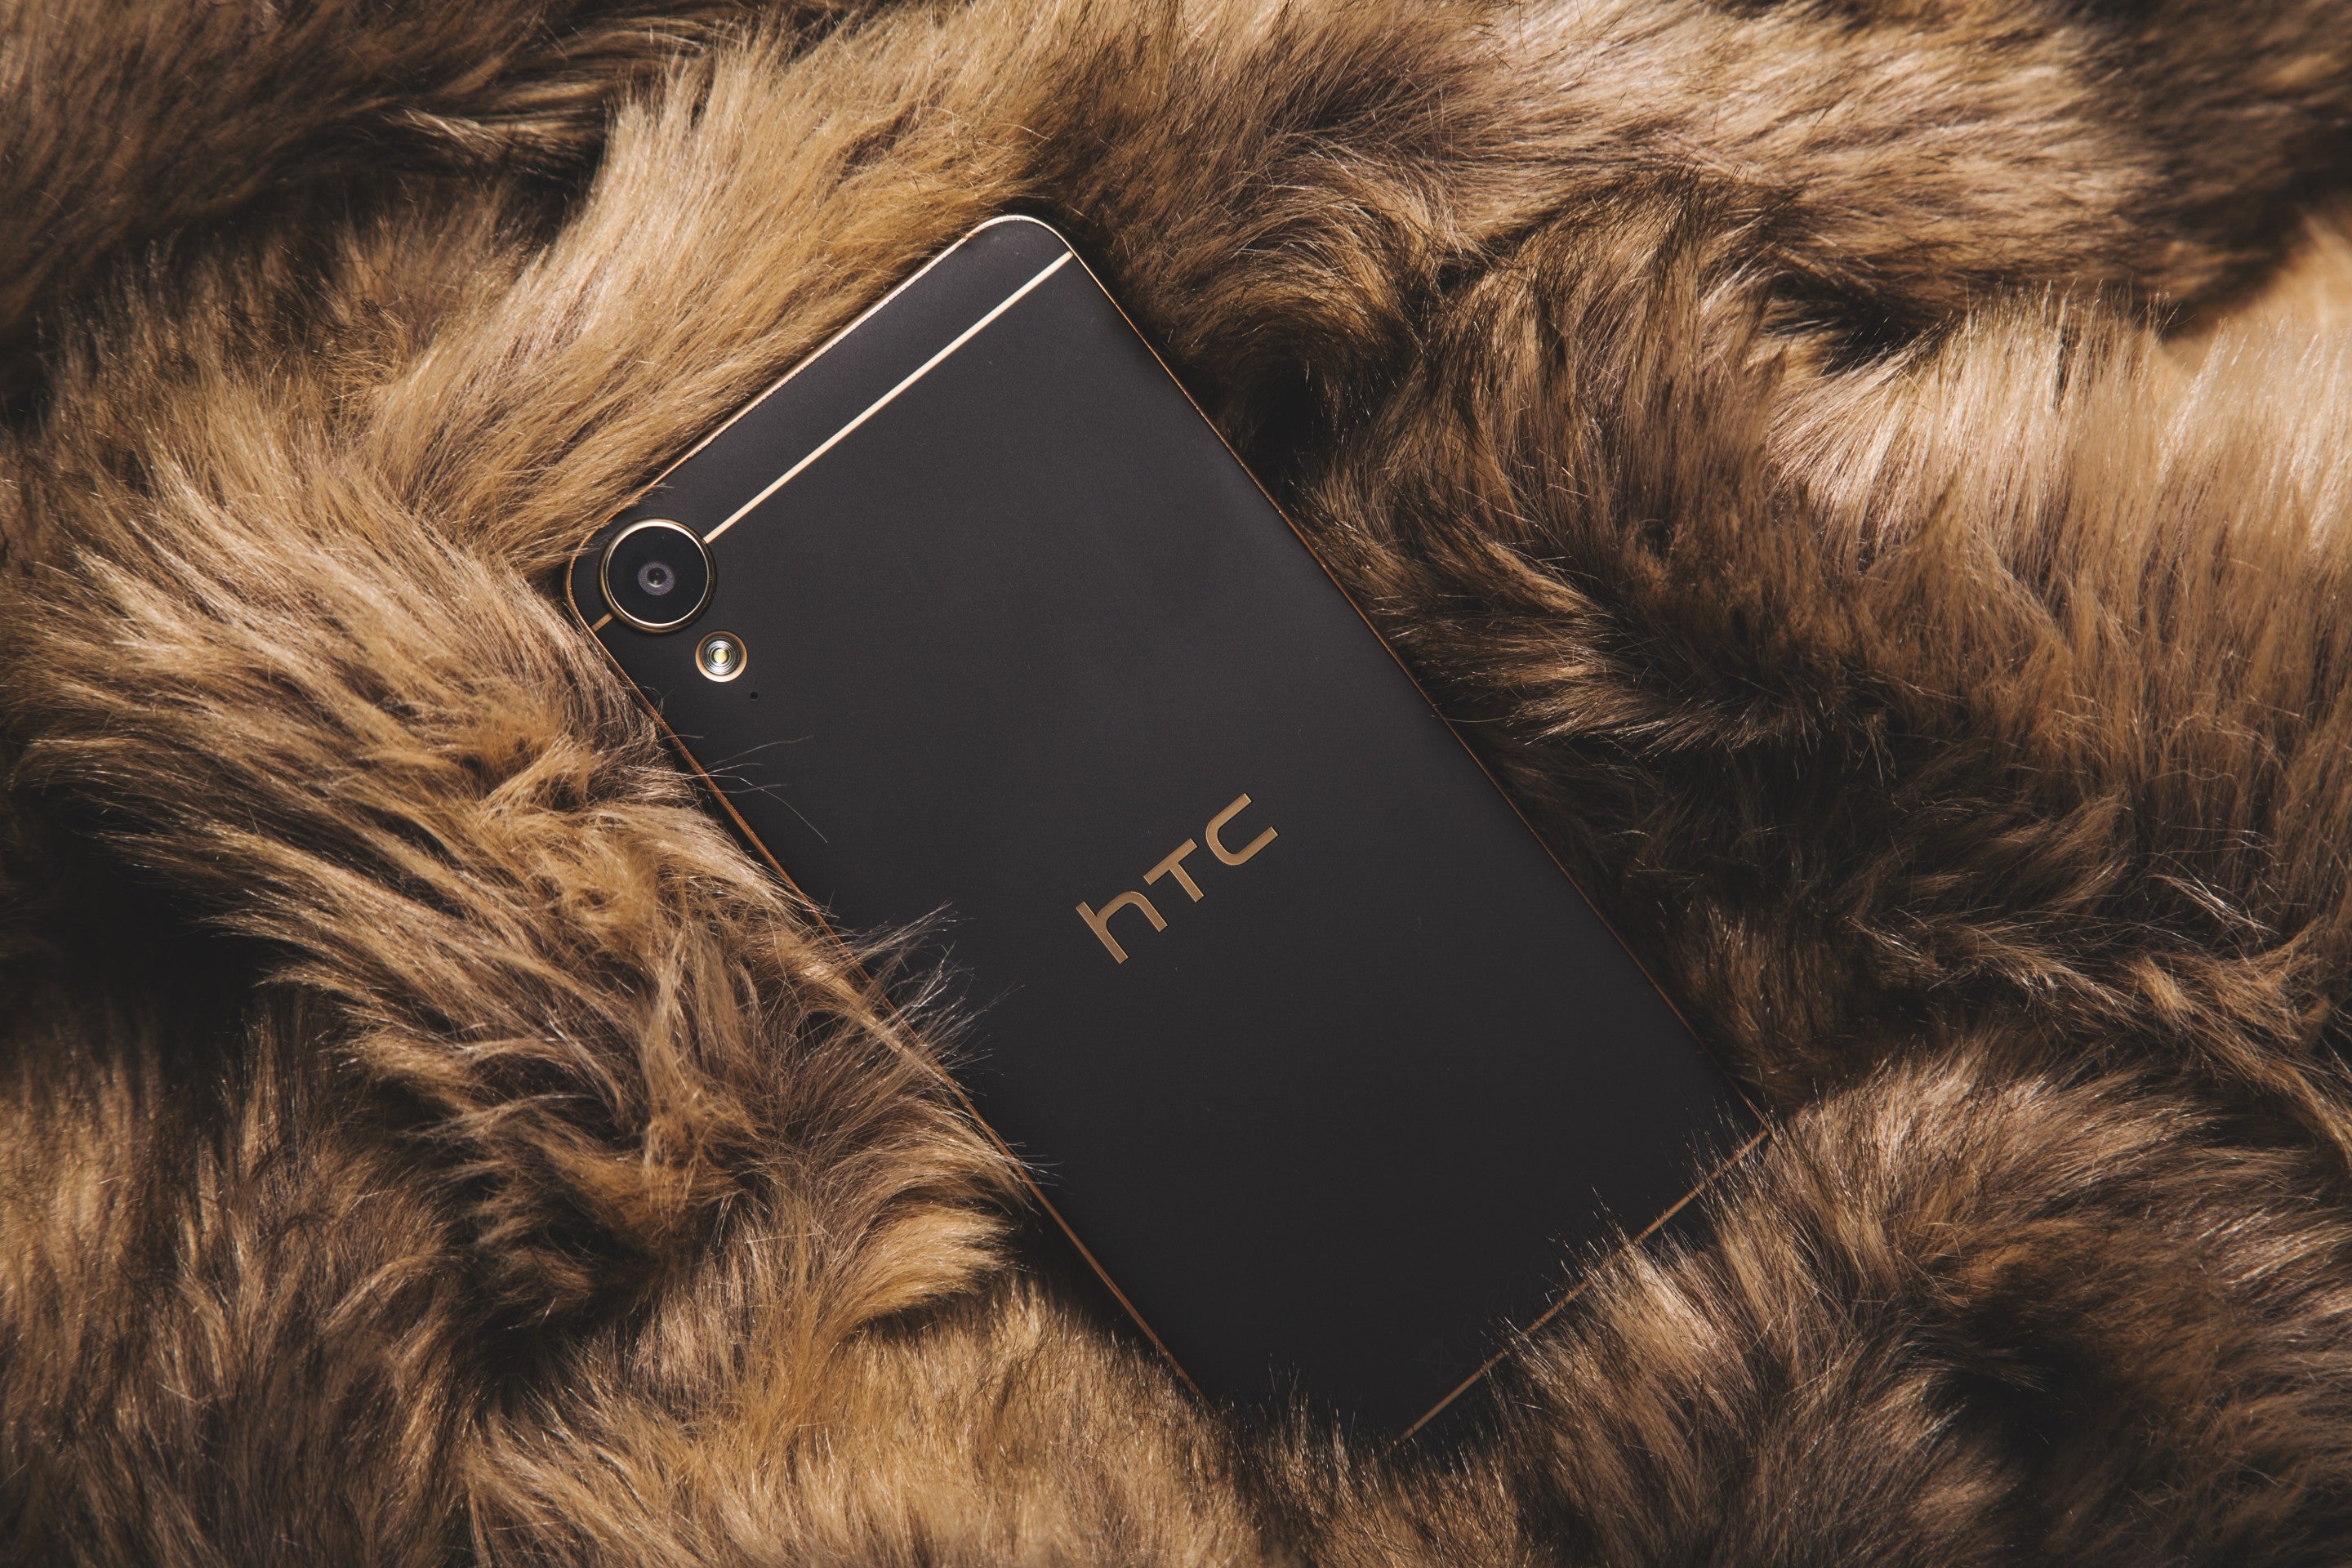 The Procedure To Carrier Unlock HTC Phones